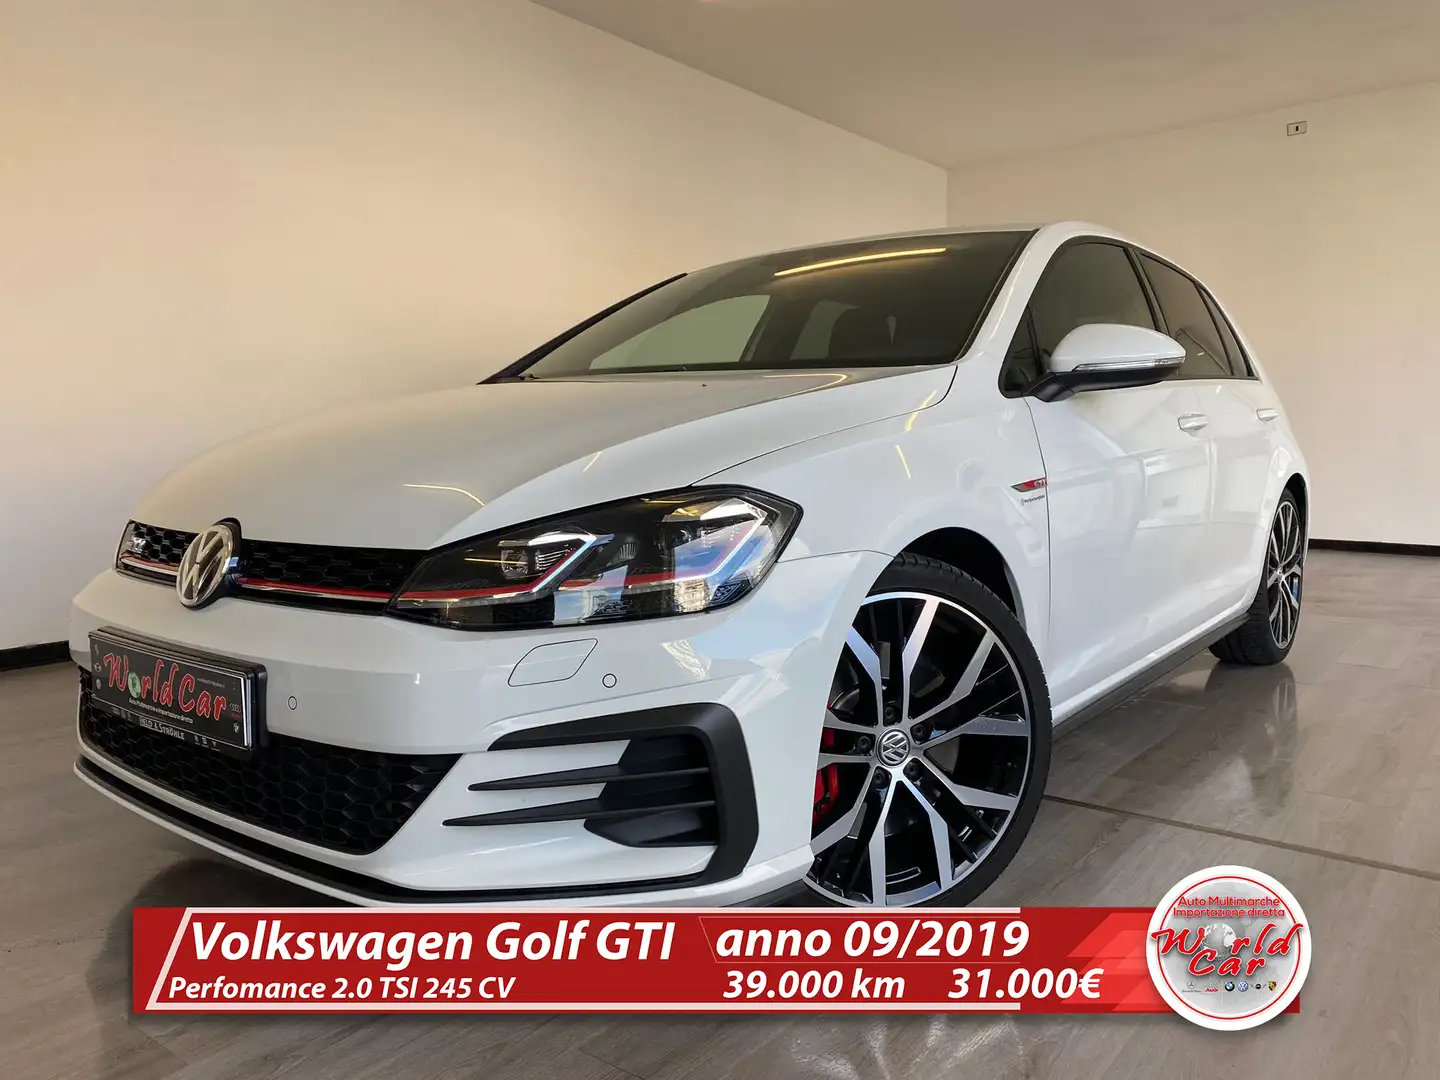 usato Volkswagen Golf GTI Berlina a Savigliano - Cn per € 31.000,-